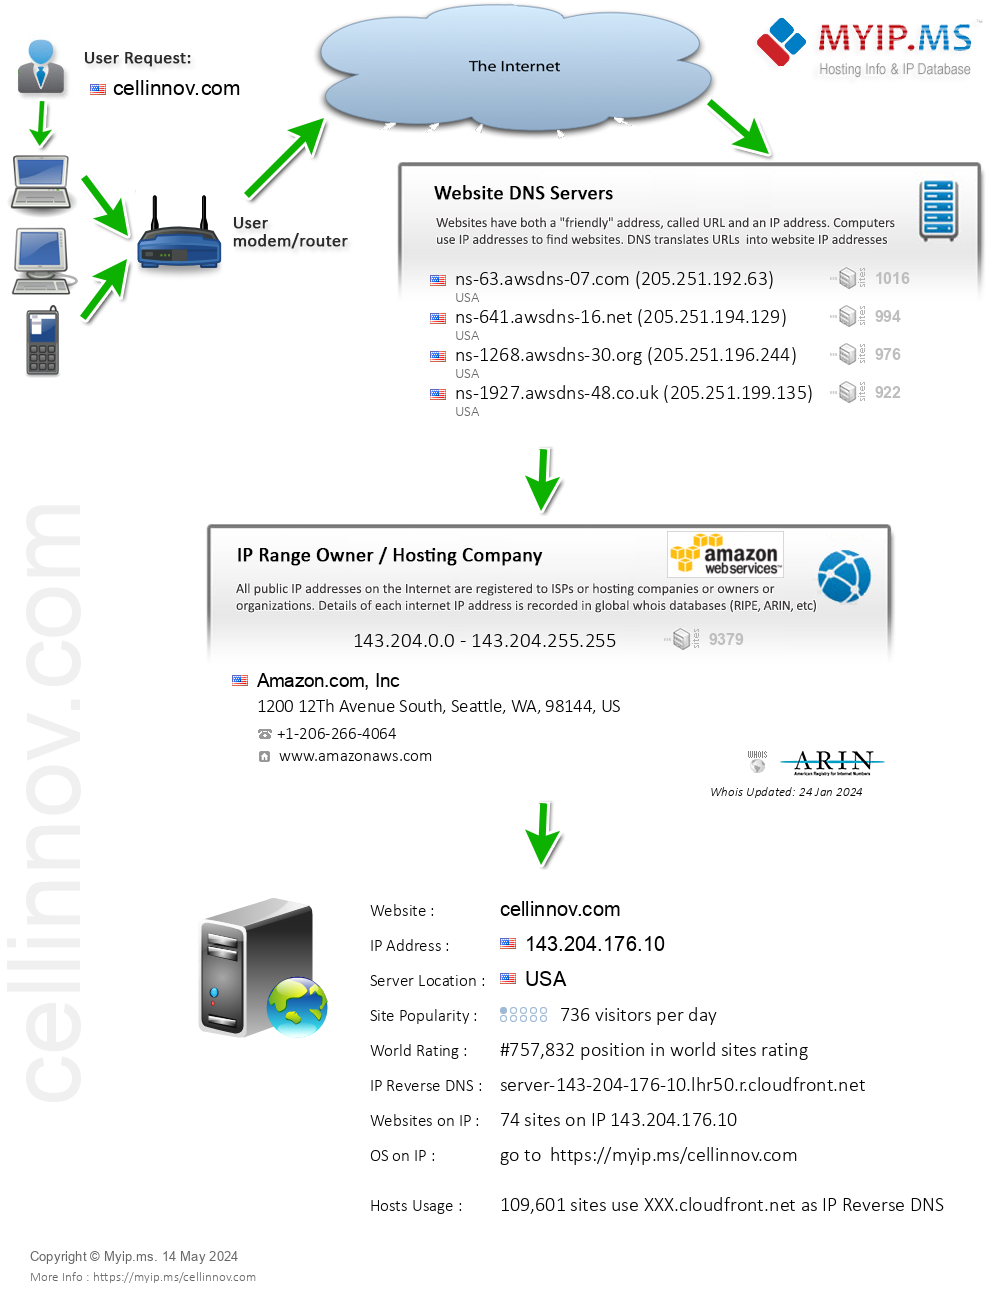 Cellinnov.com - Website Hosting Visual IP Diagram